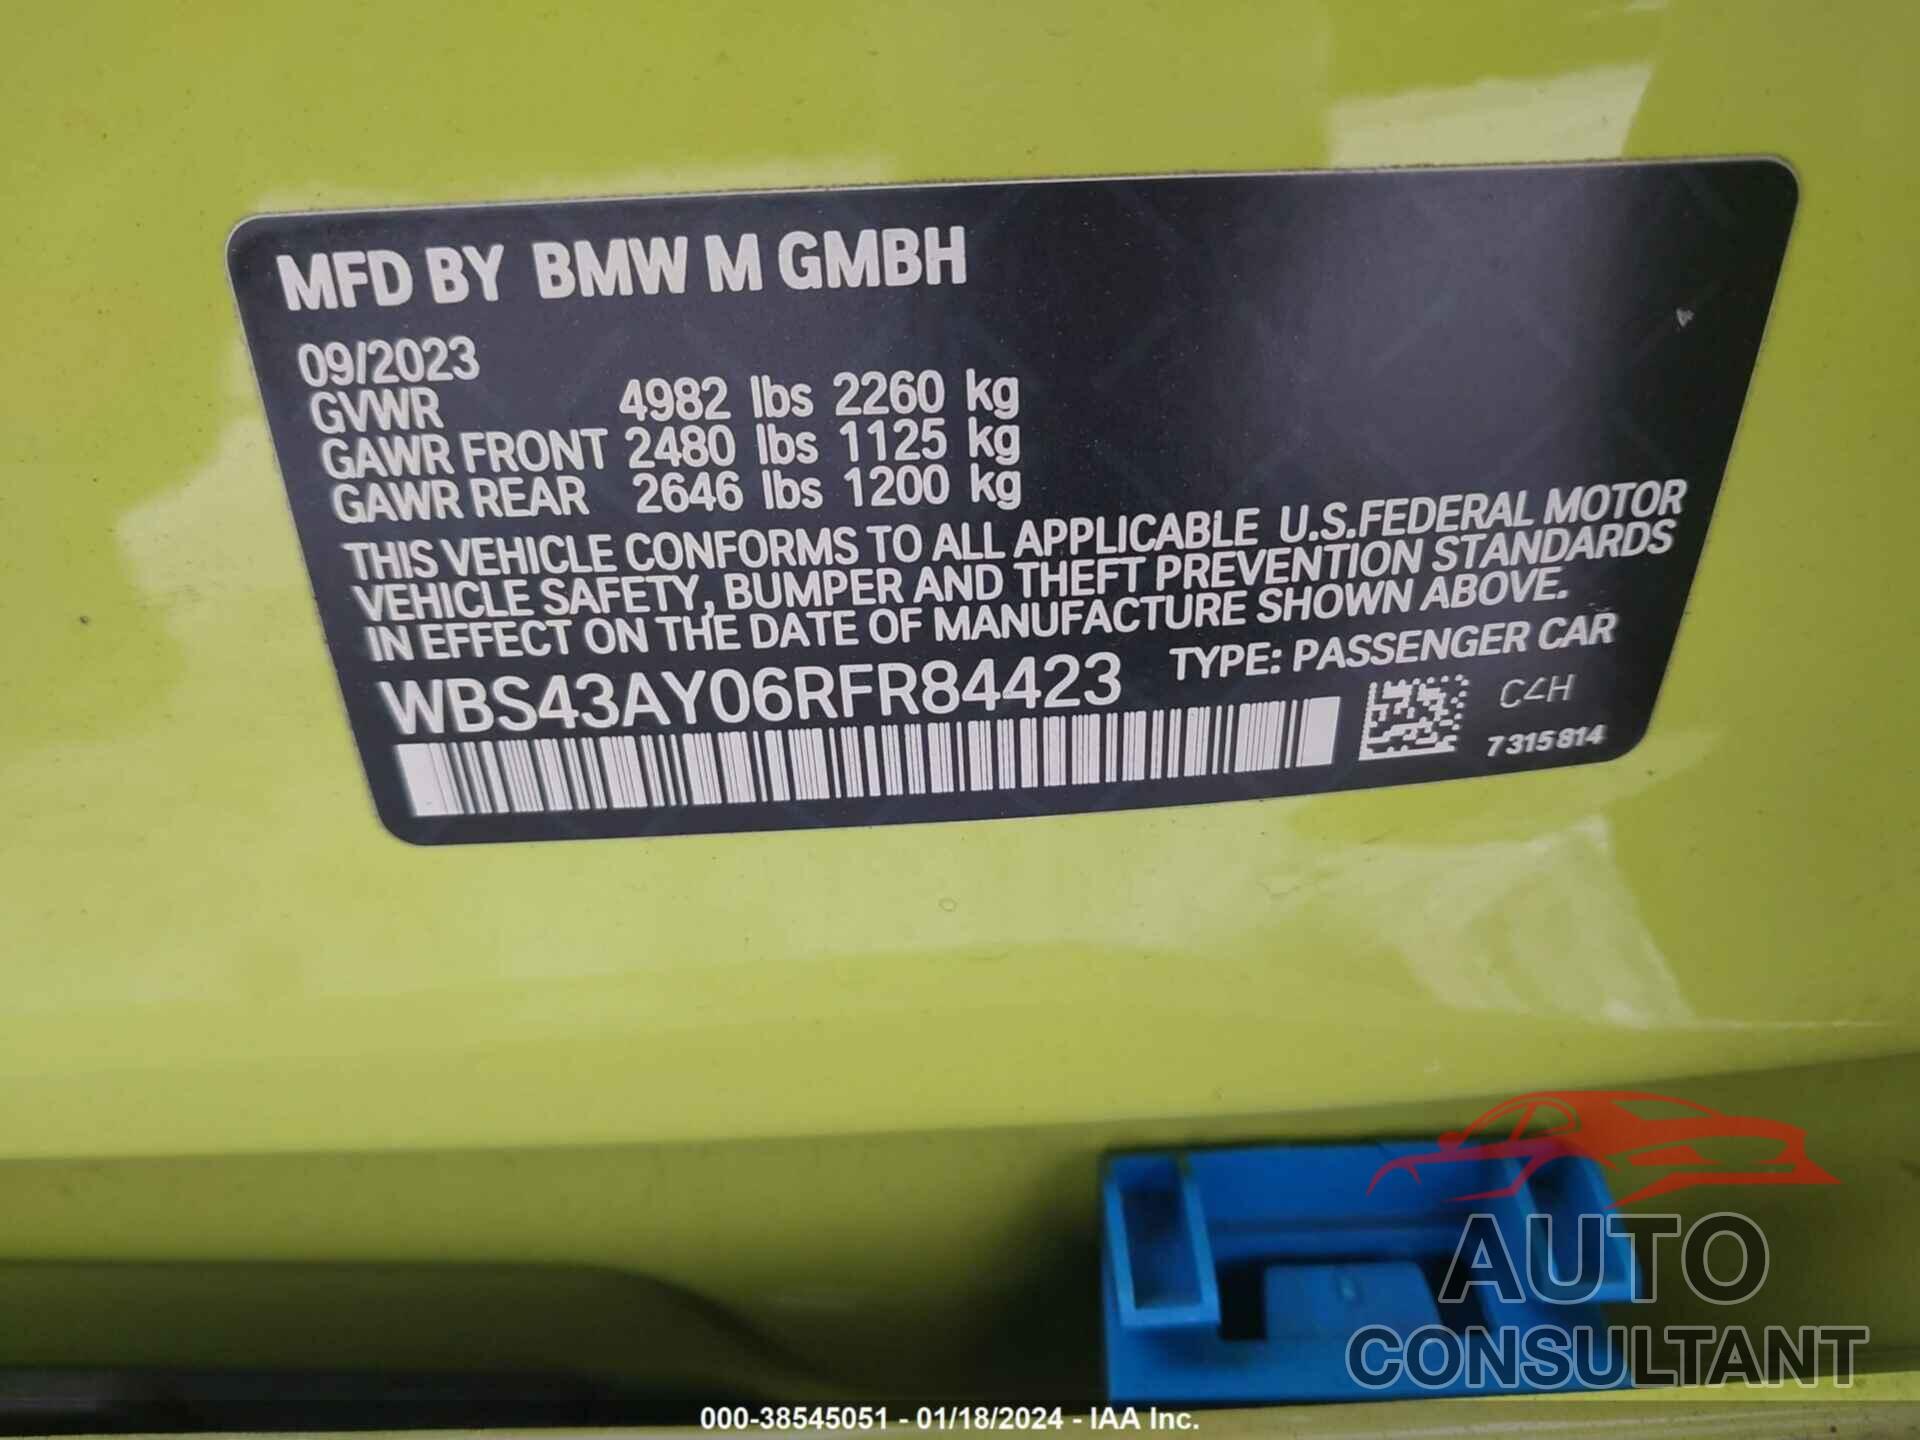 BMW M3 2024 - WBS43AY06RFR84423